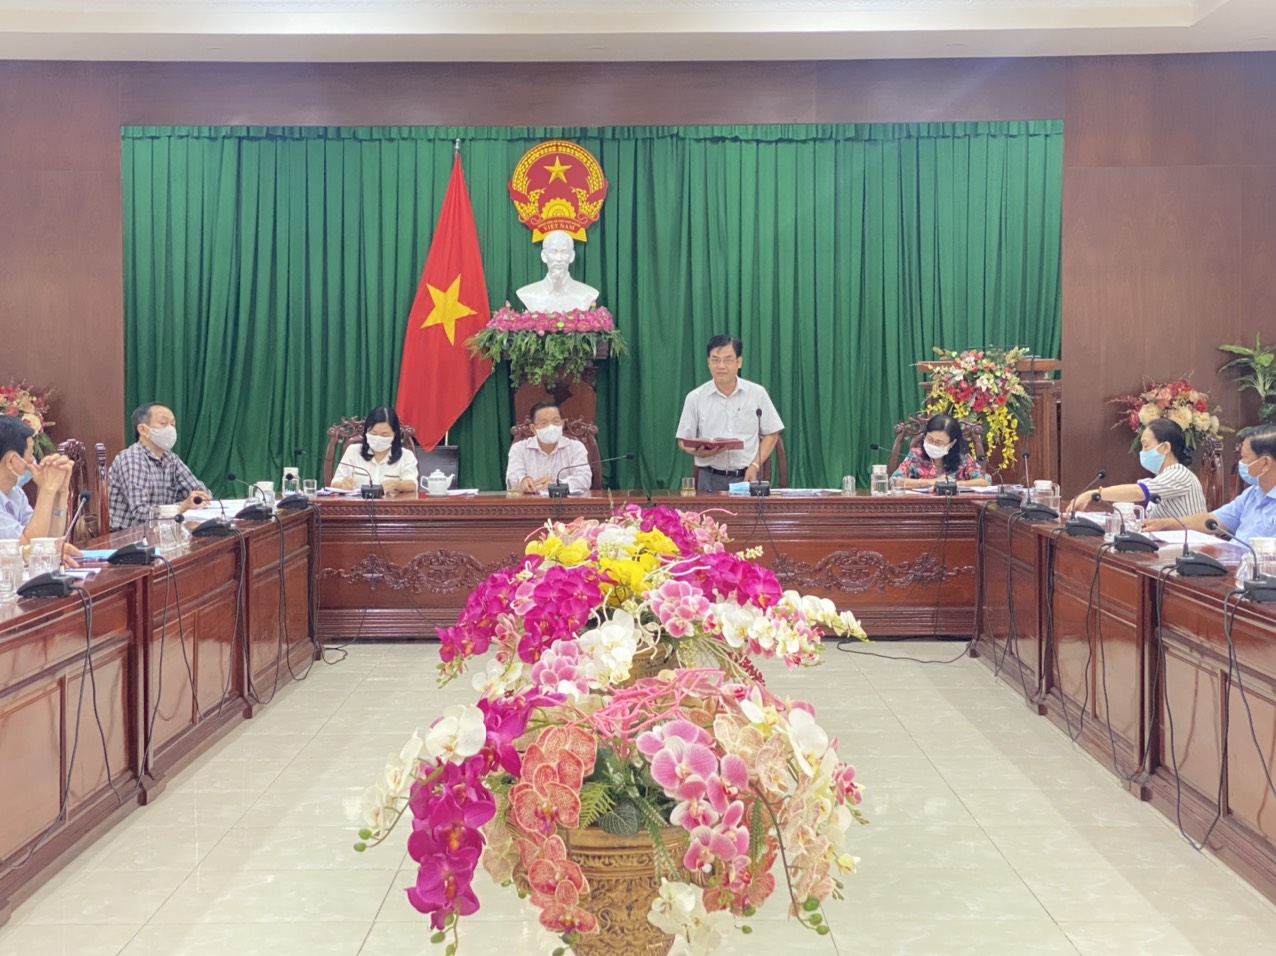 Ông Nguyễn Xuân Hải, Ủy viên Ban Thường vụ Thành ủy, Phó Chủ tịch Thường trực HĐND thành phố phát biểu chỉ đạo tại buổi thẩm tra.